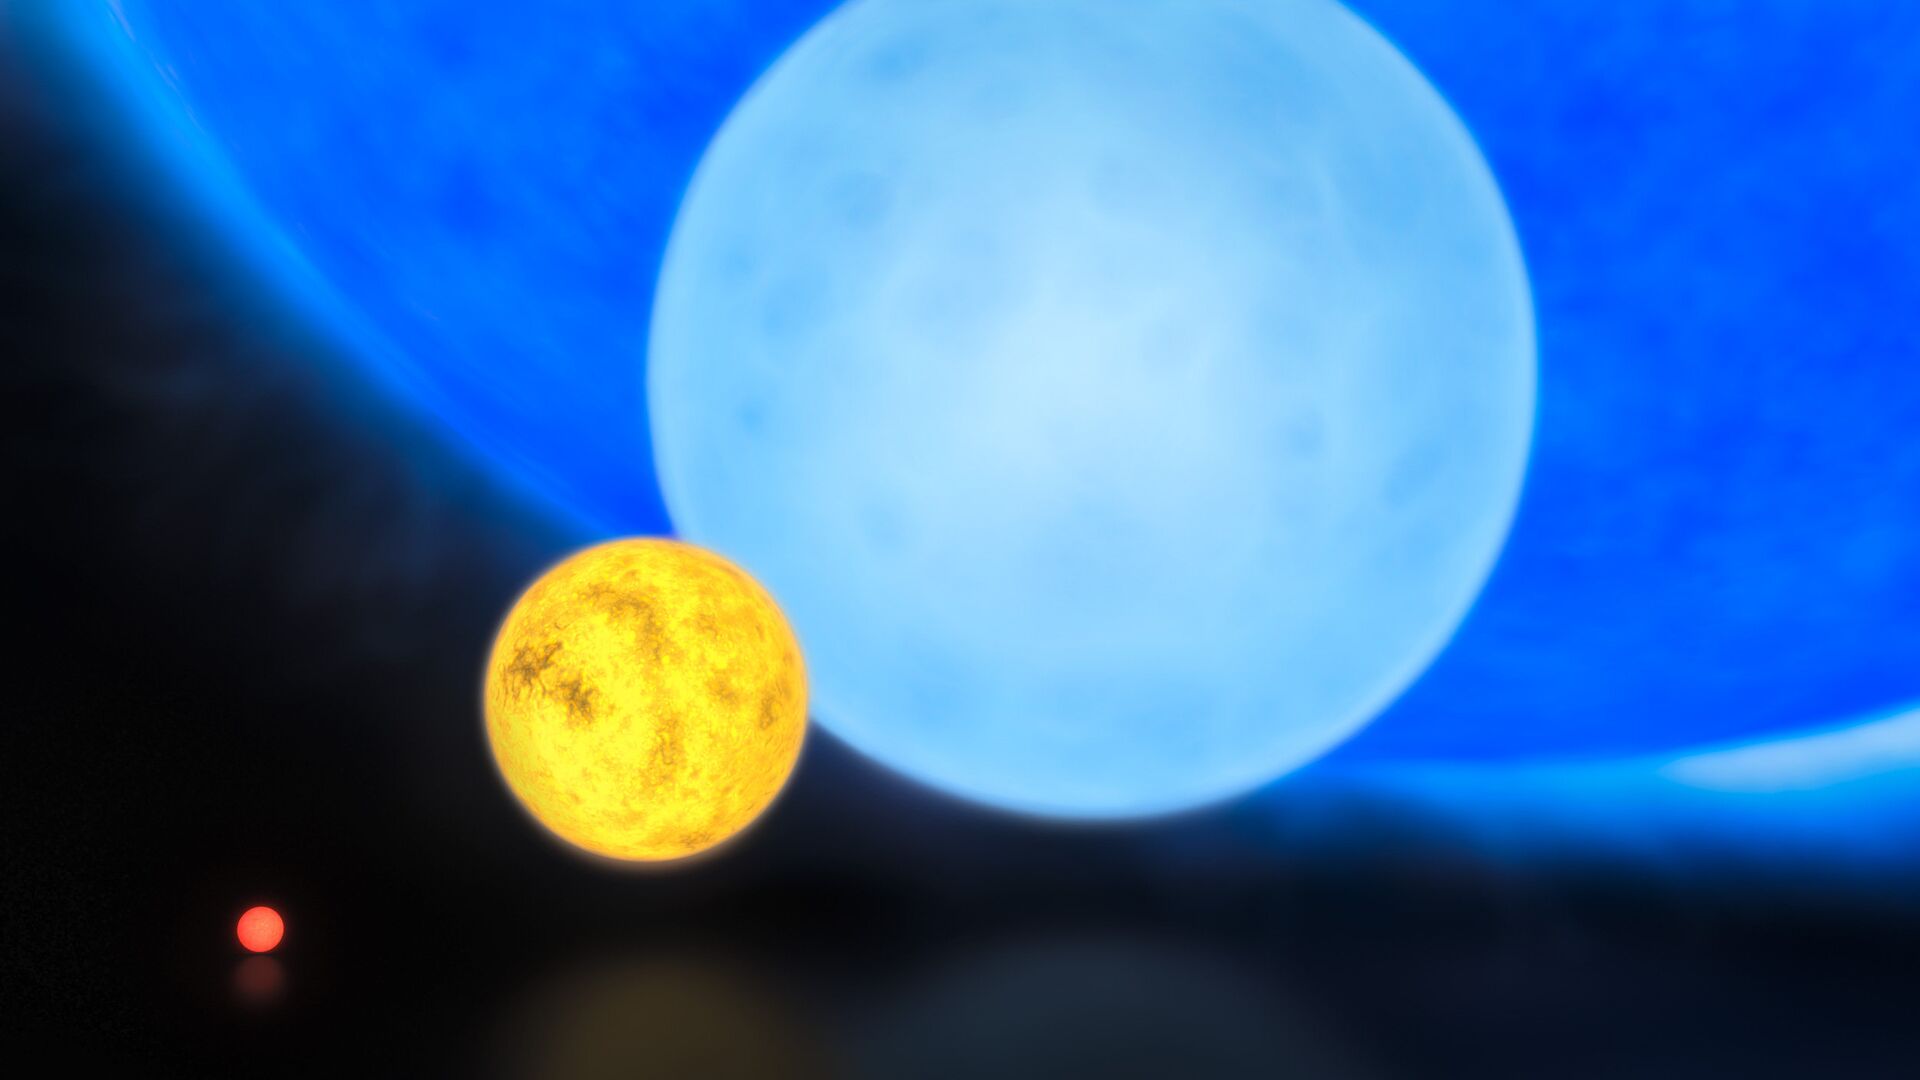 Относительные размеры звезд: красный карлик, Солнце, звезда массой около 8 солнечных и «рекордсменка» R136a1 (синяя звезда на фоне)  - РИА Новости, 1920, 01.01.2020